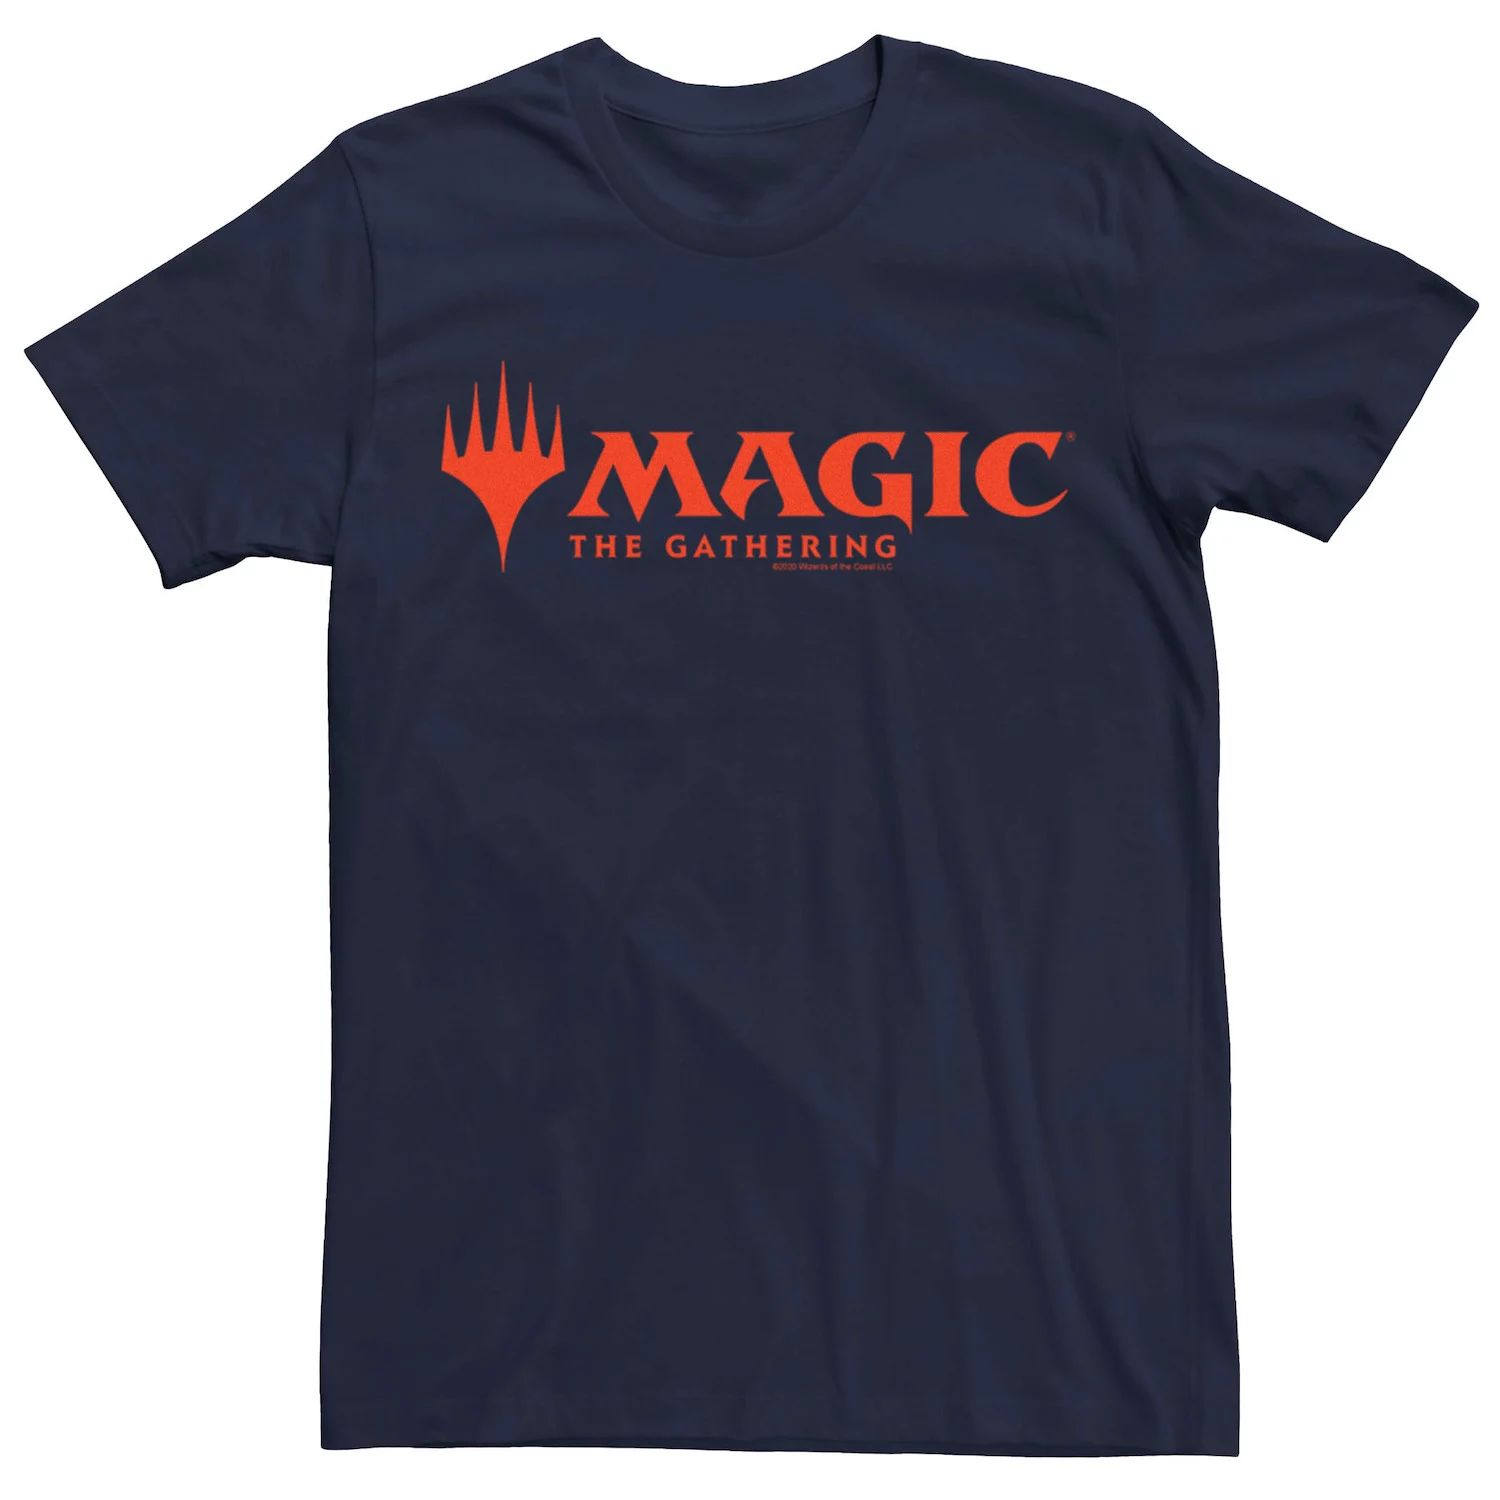 Мужская футболка с логотипом Magic The Gathering Magic Licensed Character мужская футболка magic the gathering planeswalker licensed character